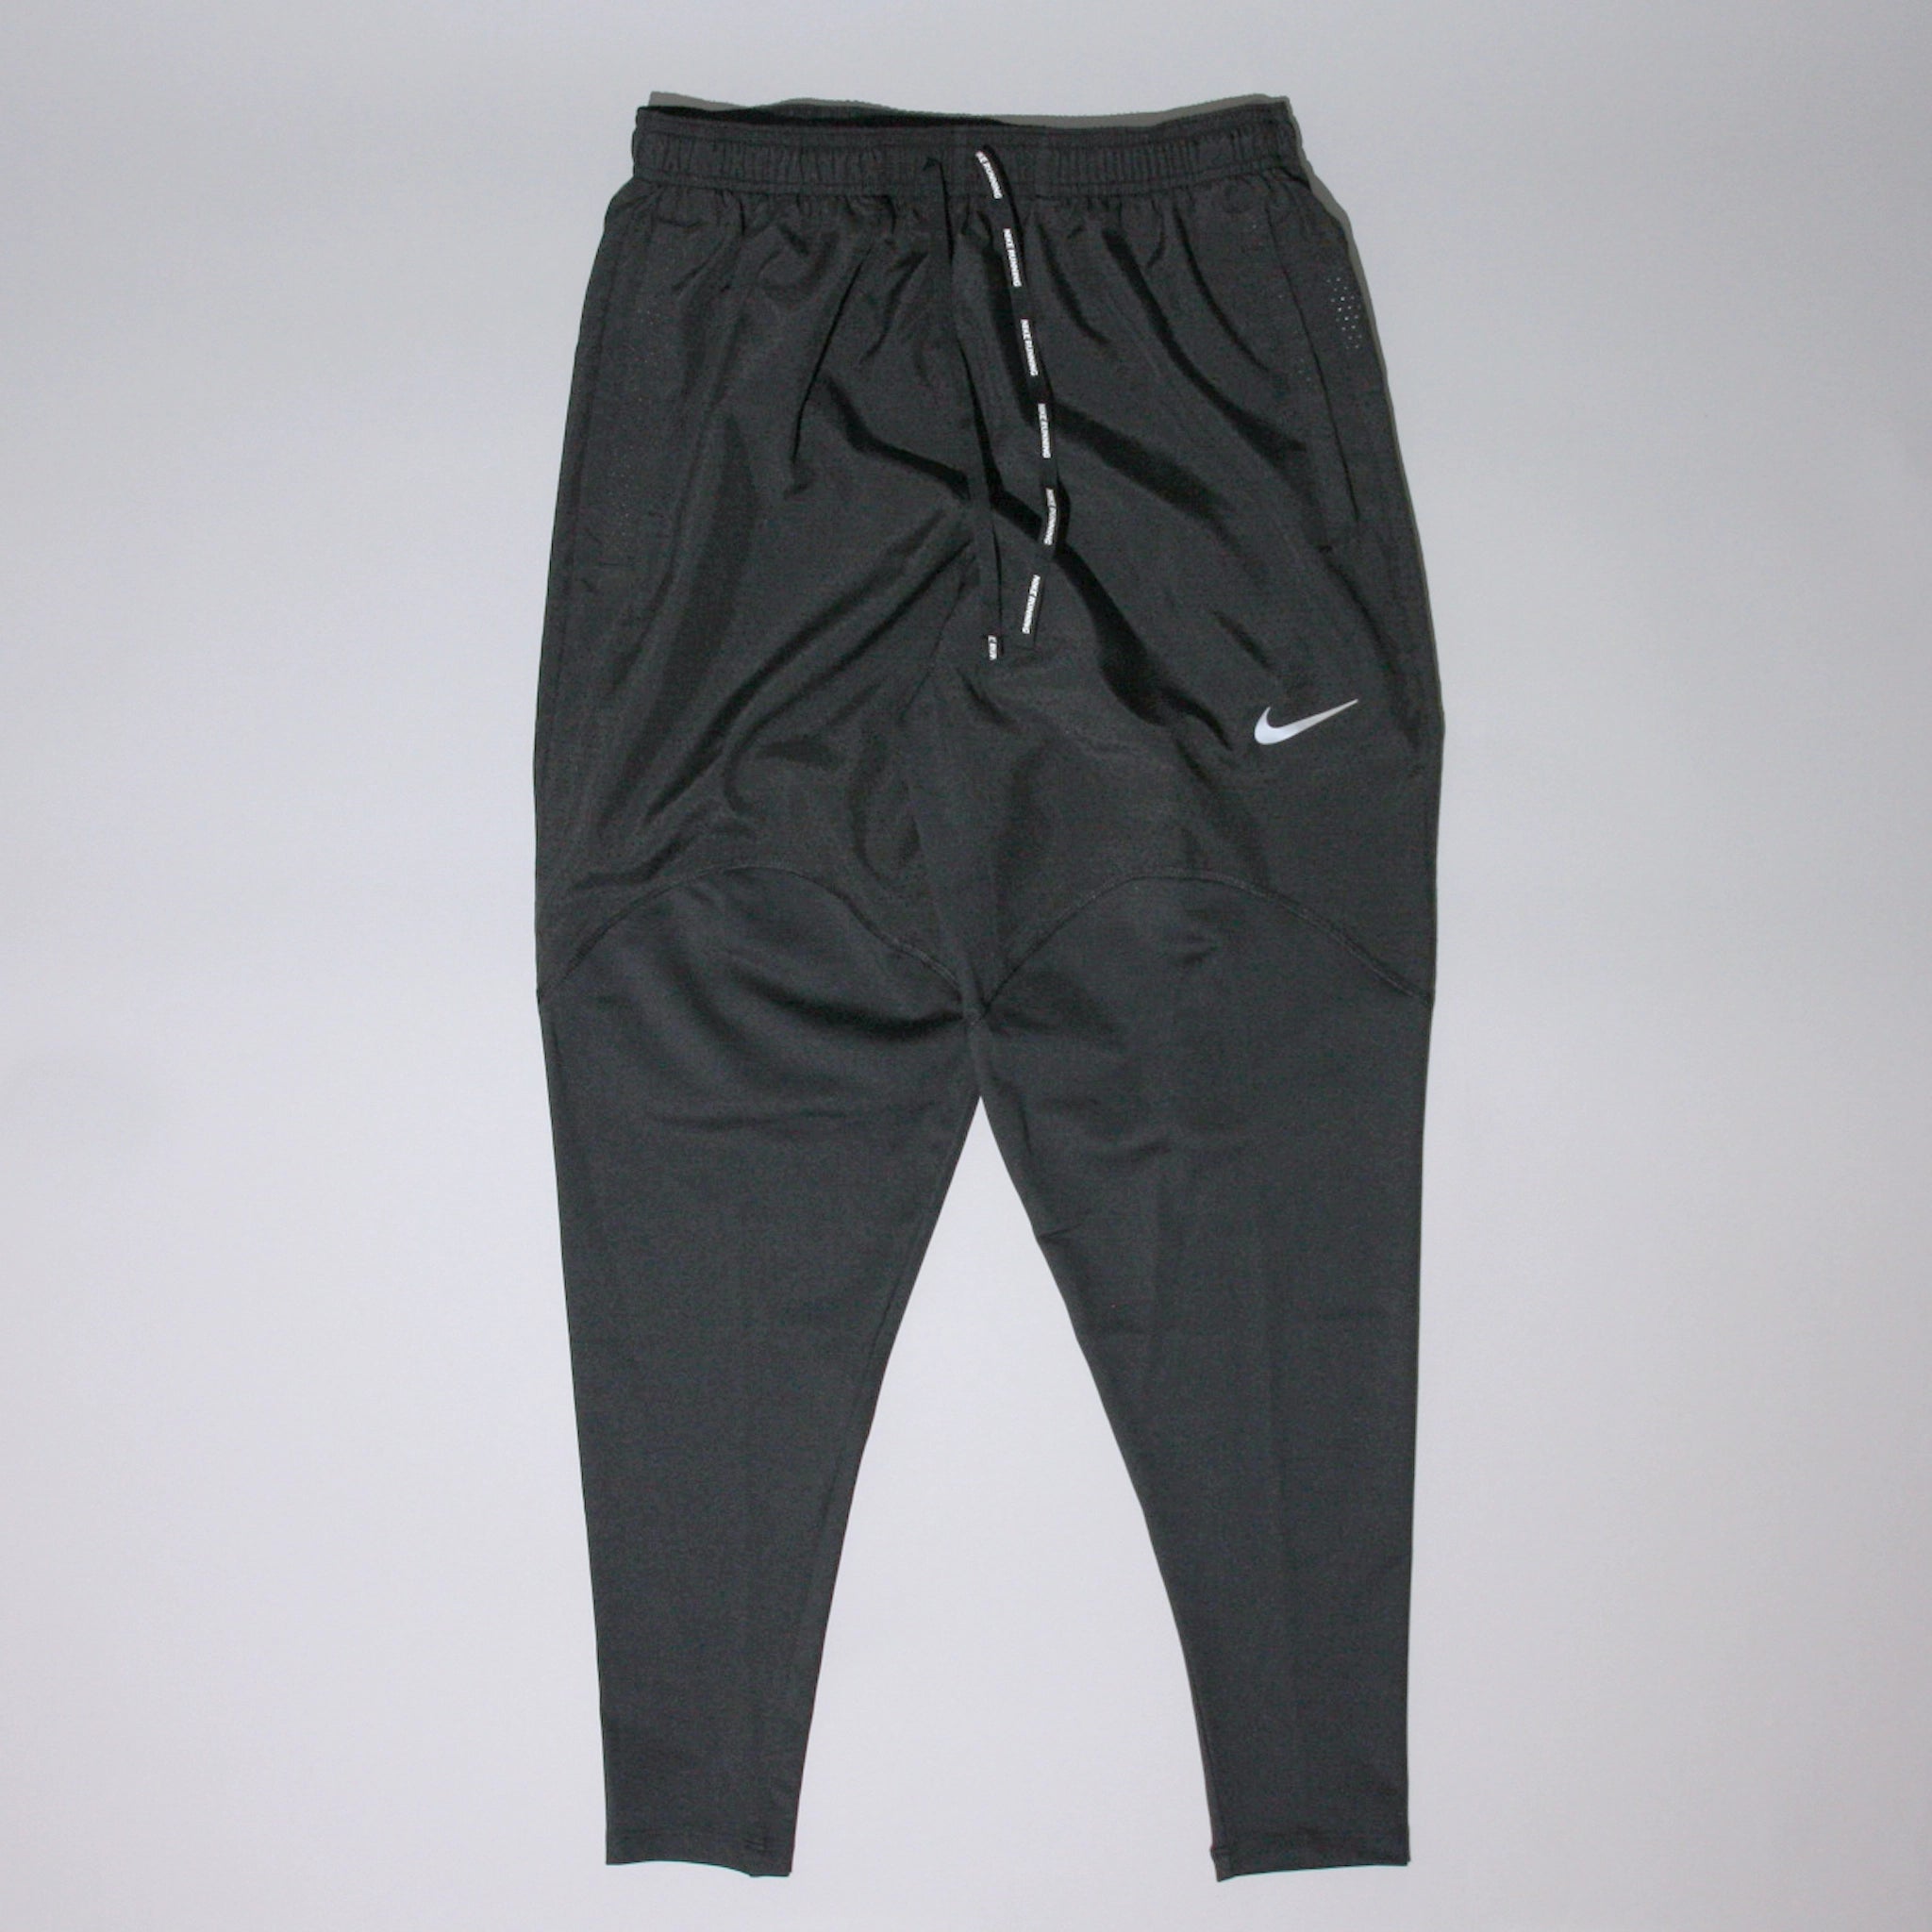 Nike Men's Phenom Elite Knit Running Pants, Rough Green/Black, US XL